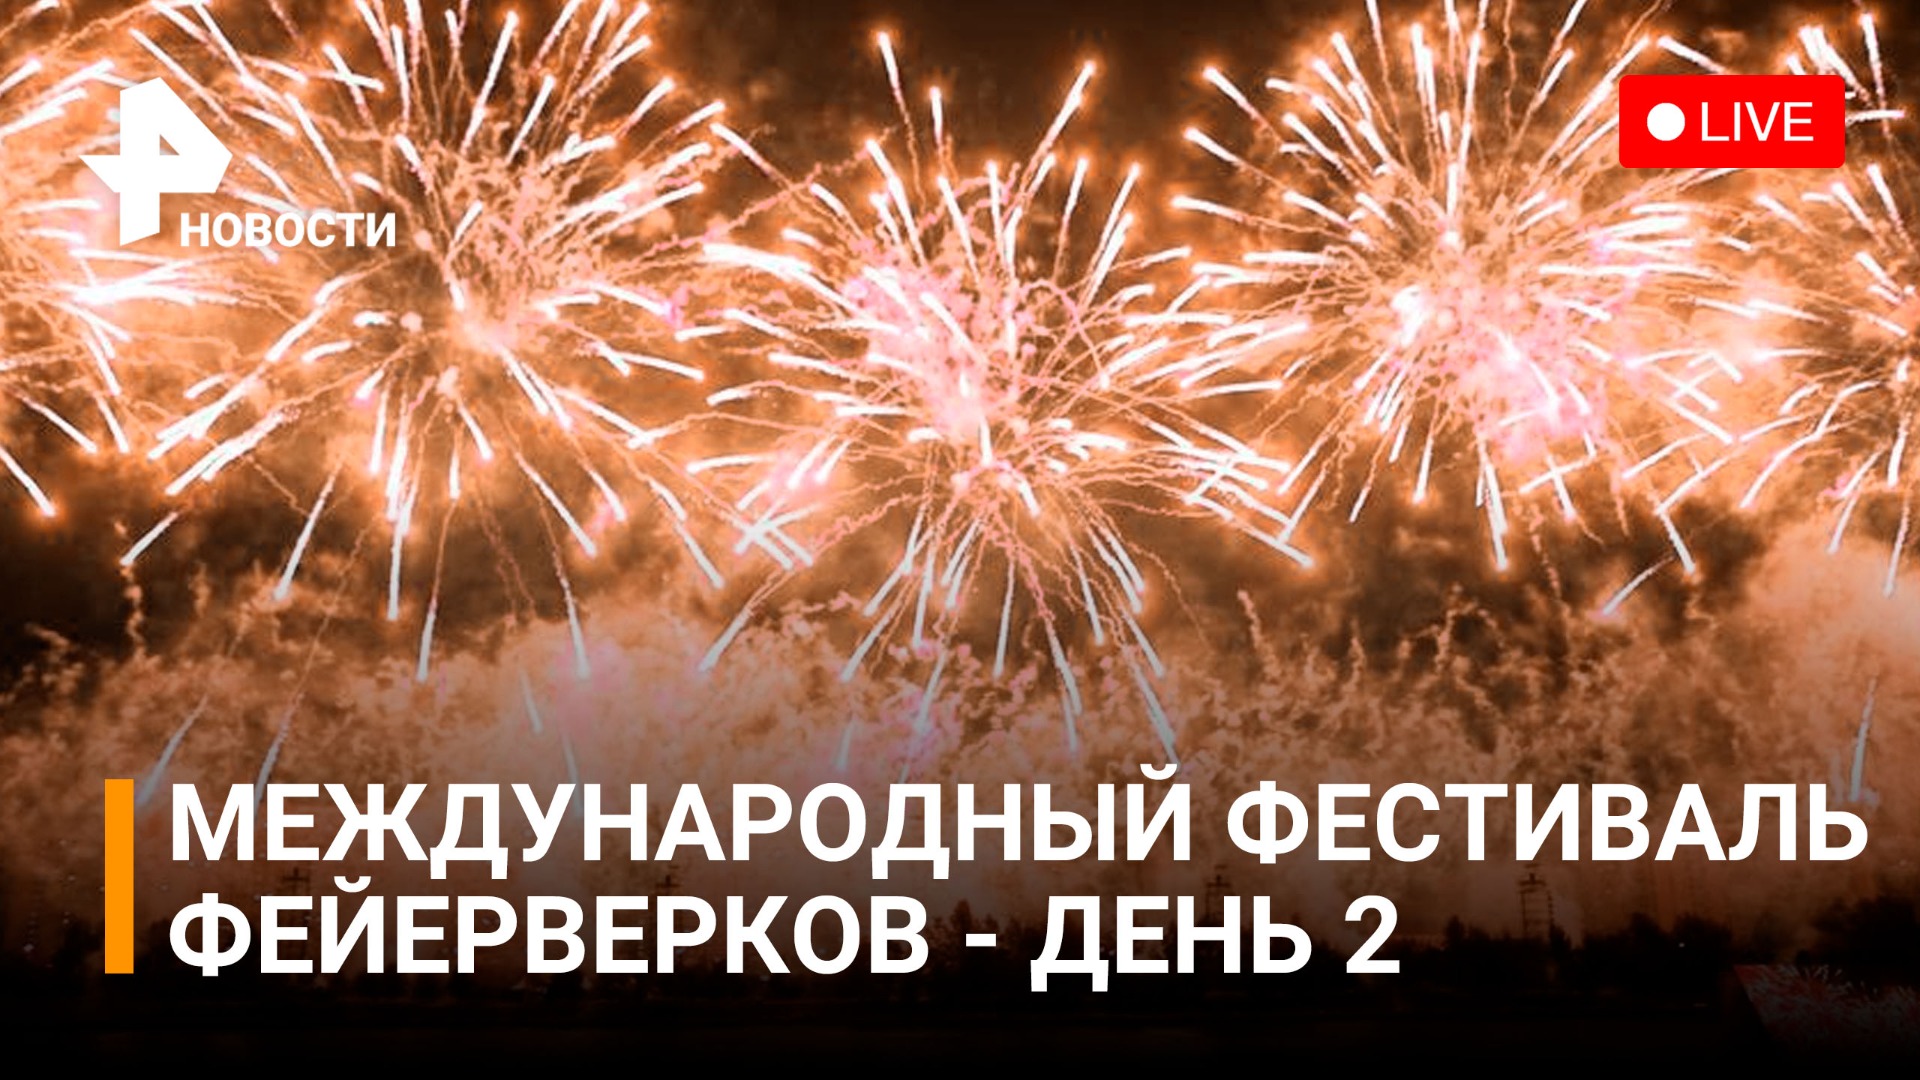 Международный фестиваль фейерверков в Москве - день 2. Прямая трансляция